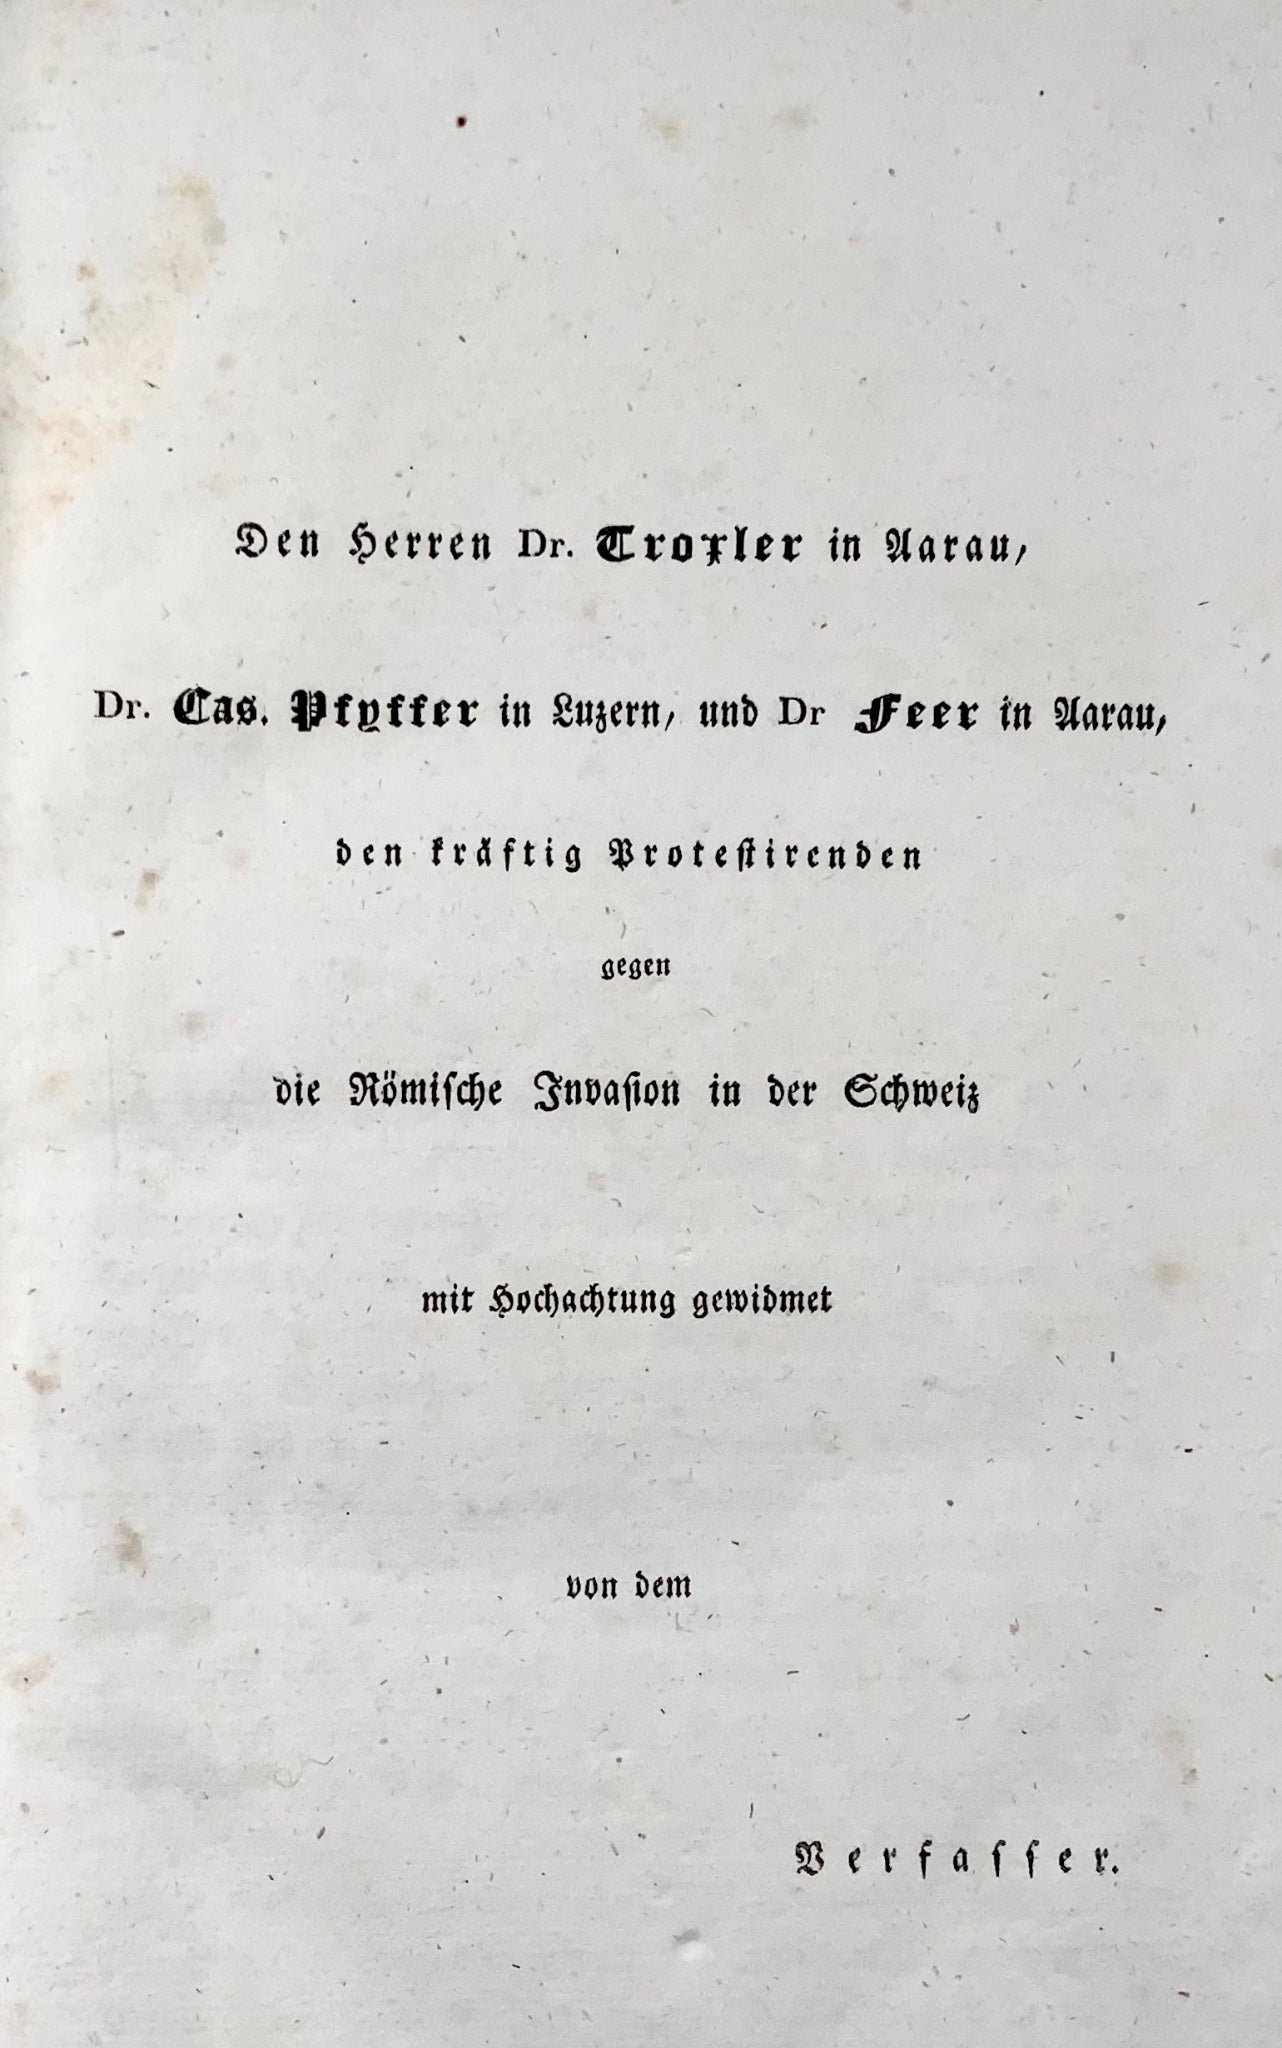 1833 Ludwig Snell, critique libérale radicale des catholiques romains en Suisse